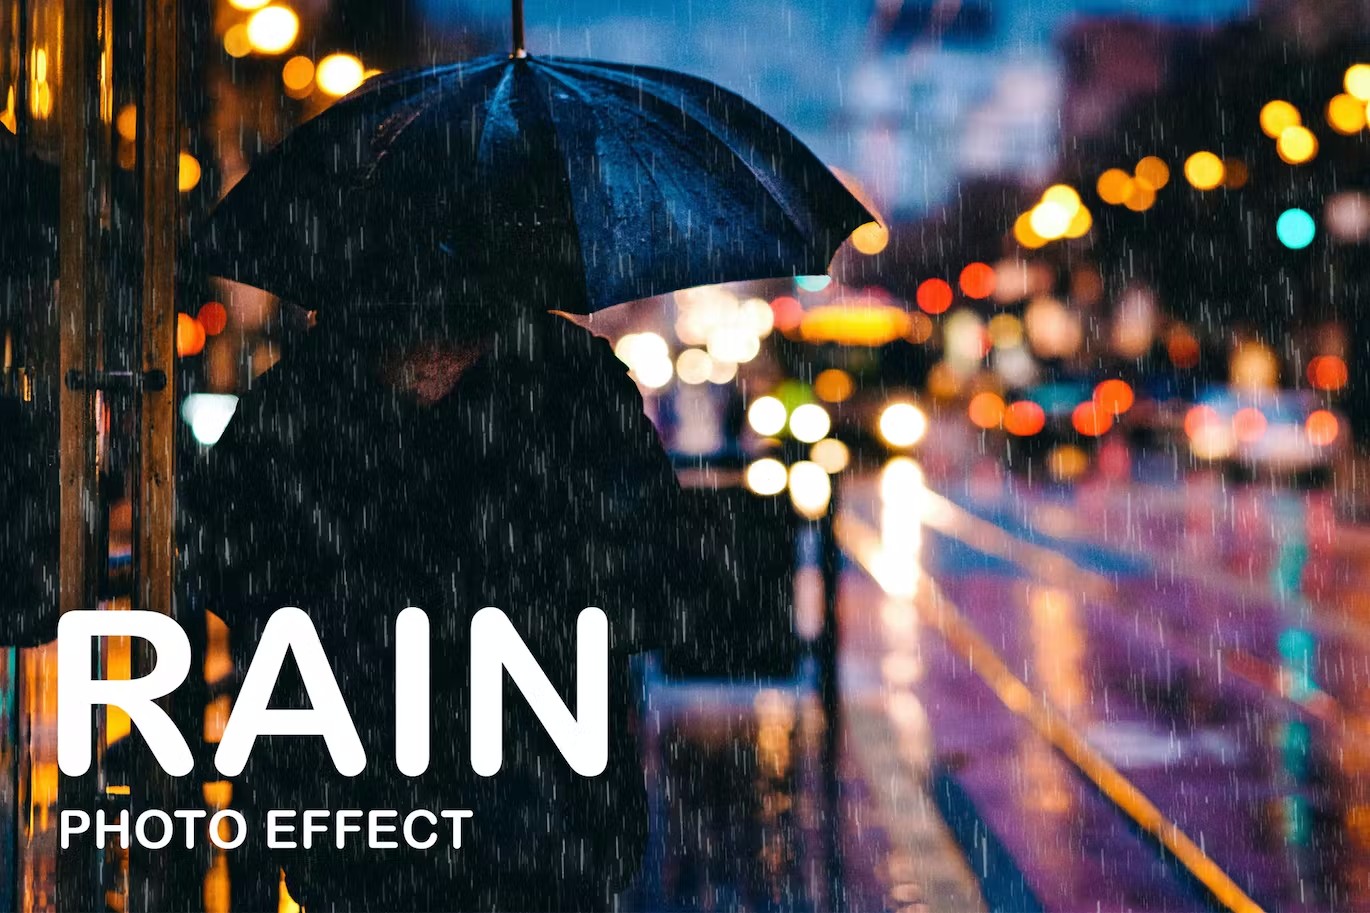 雨水叠层照片特效PS图层样式 Rain Photo Effect 插件预设 第1张